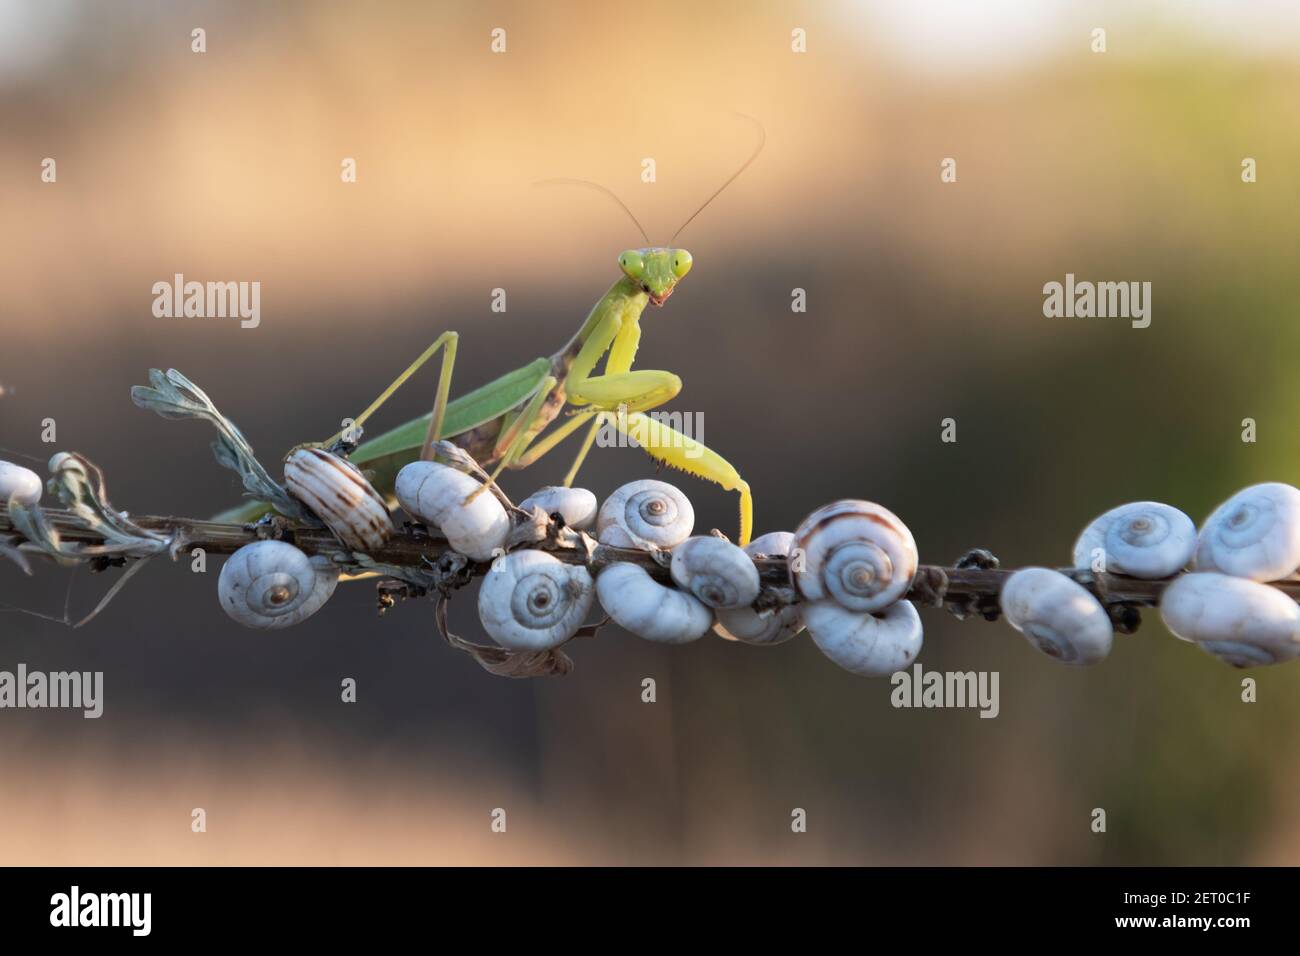 Europäische Mantis religiosa oder betende Mantis auf Zweig Nahaufnahme. Makroaufnahme. Insektenfotografie Stockfoto